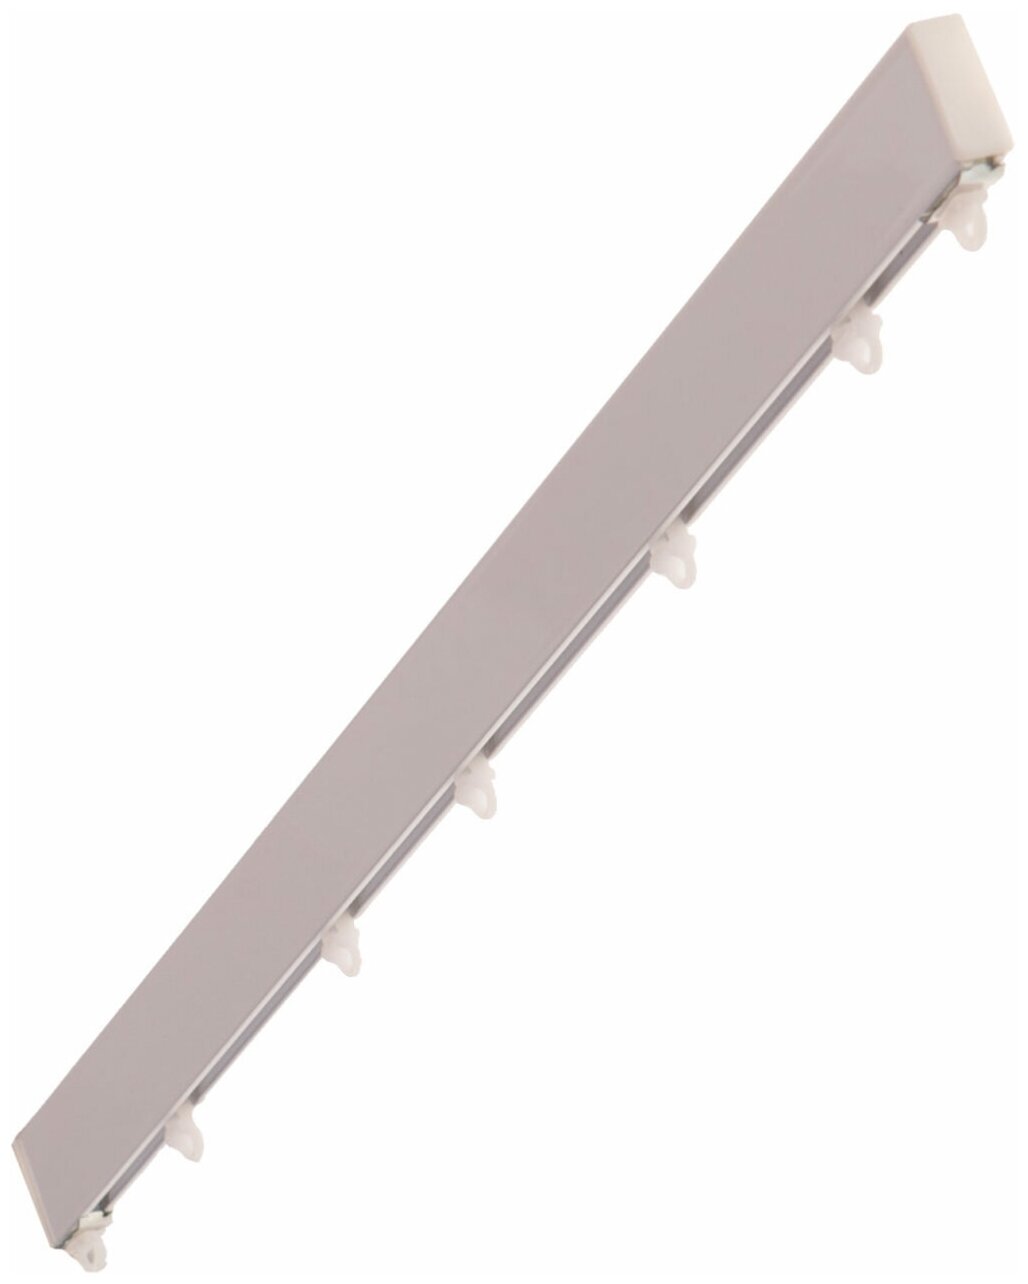 Профильный алюминиевый карниз для штор СТ-41 цвет белый 100см. Windeco